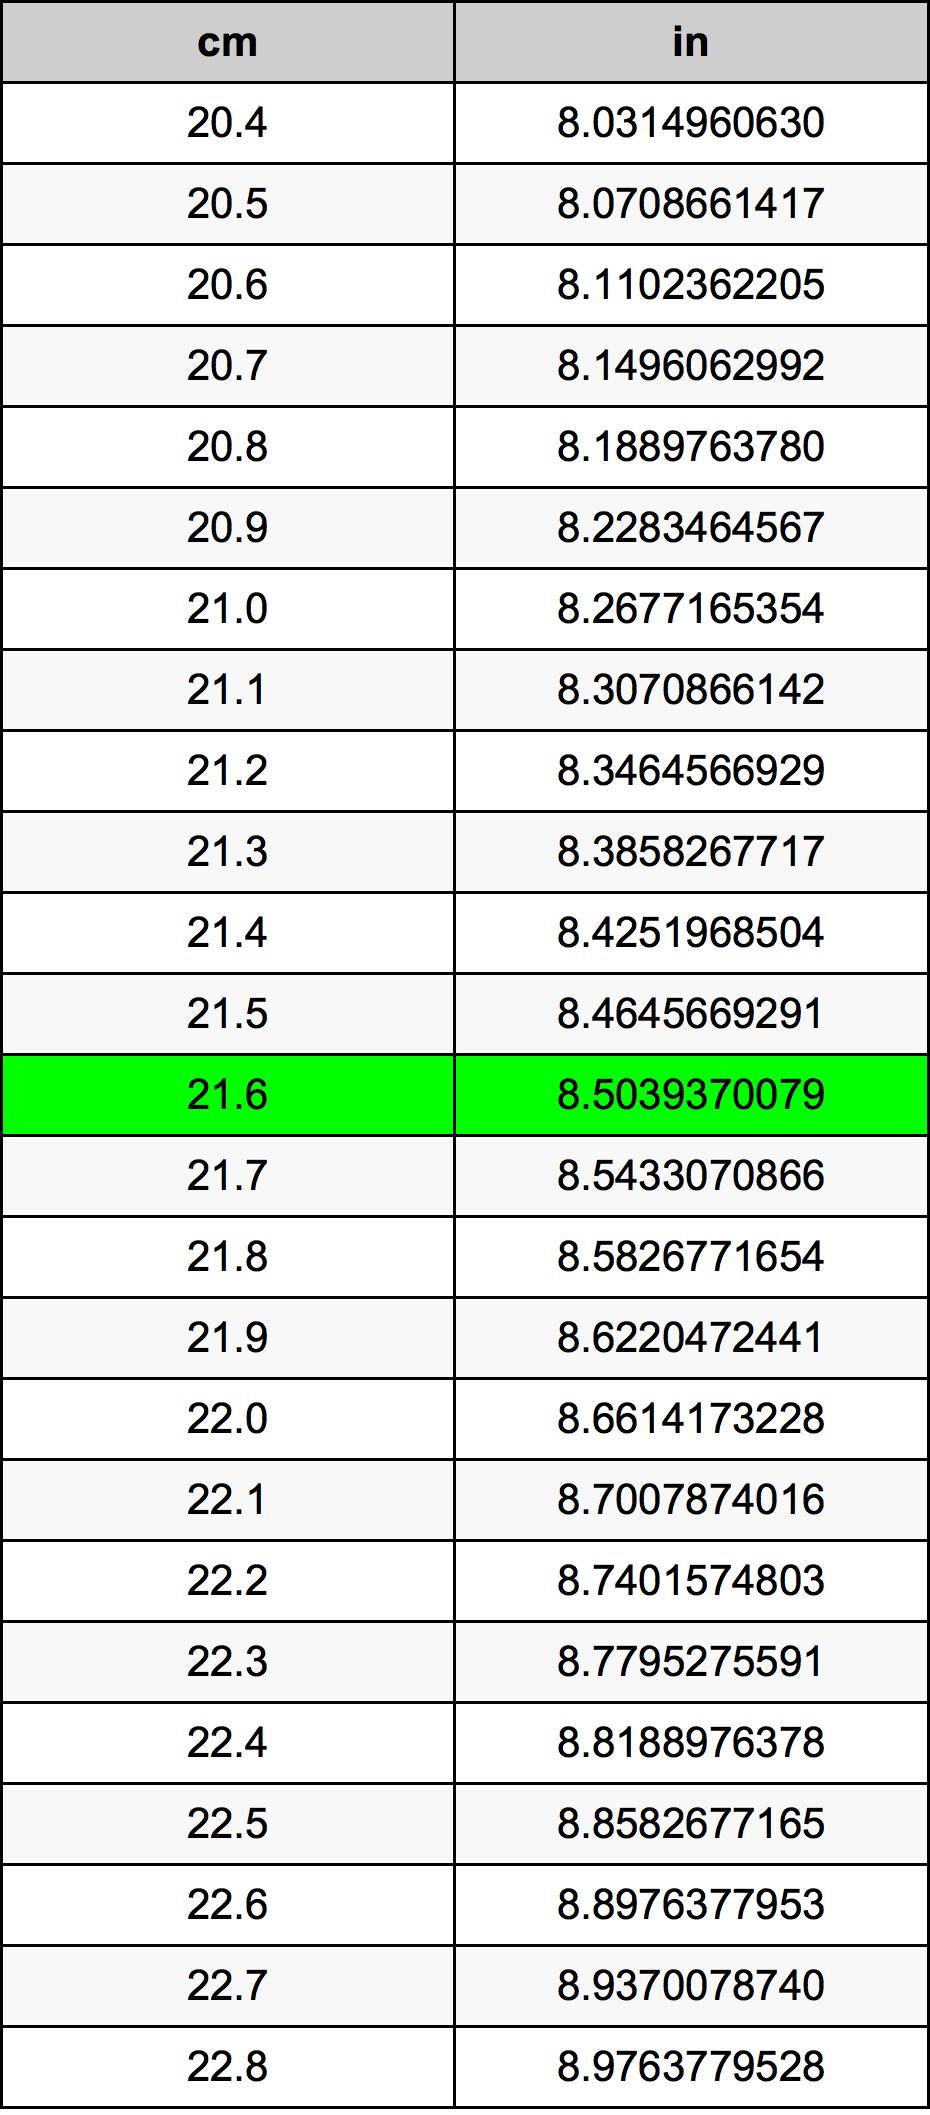 21.6 Centiméter átszámítási táblázat